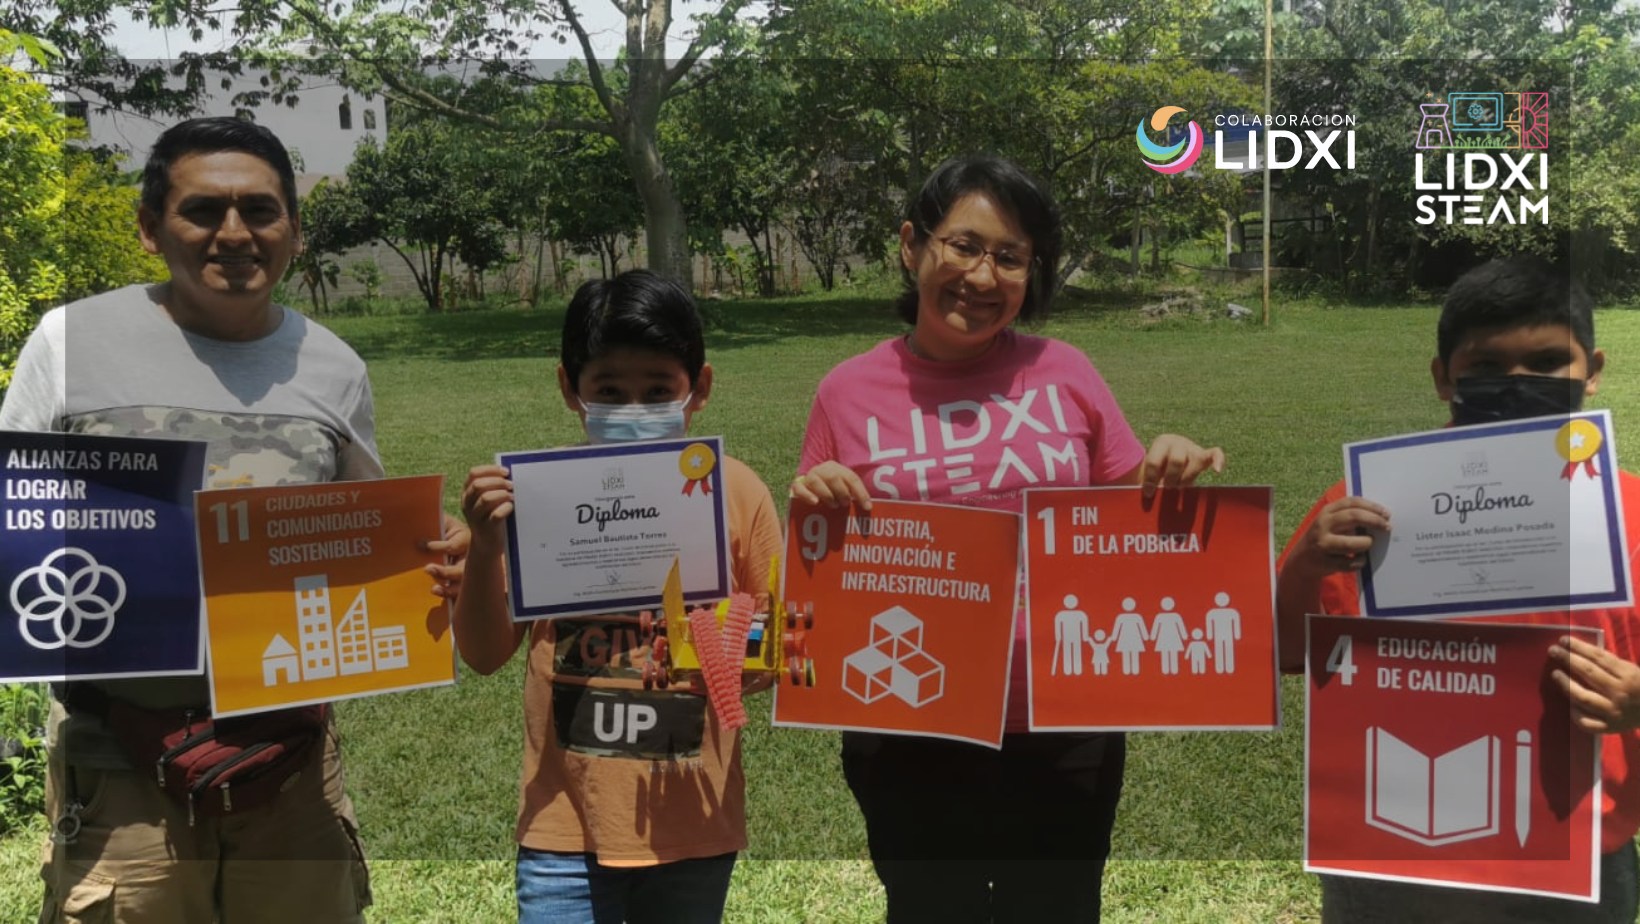 Un hombre, un niño, una mujer y otro niño aparecen en la imagen con carteles en la mano que muestran los Objetivos de Desarrollo Sostenible